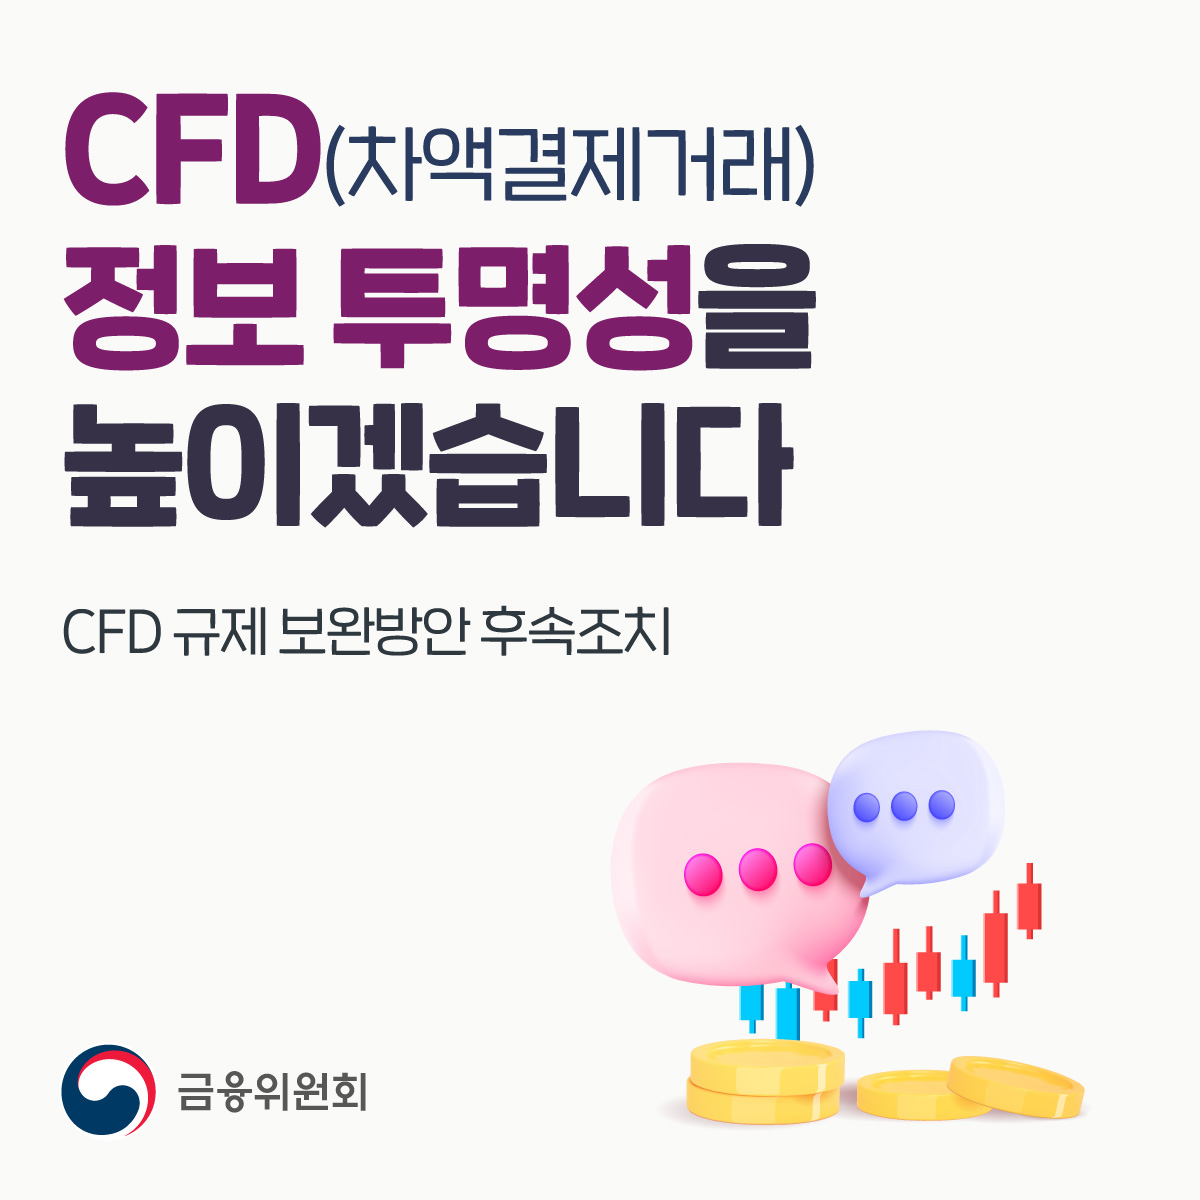 CFD(차액결제거래) 정보 투명성을 높이겠습니다. CFD 규제 보완방안 후속조치